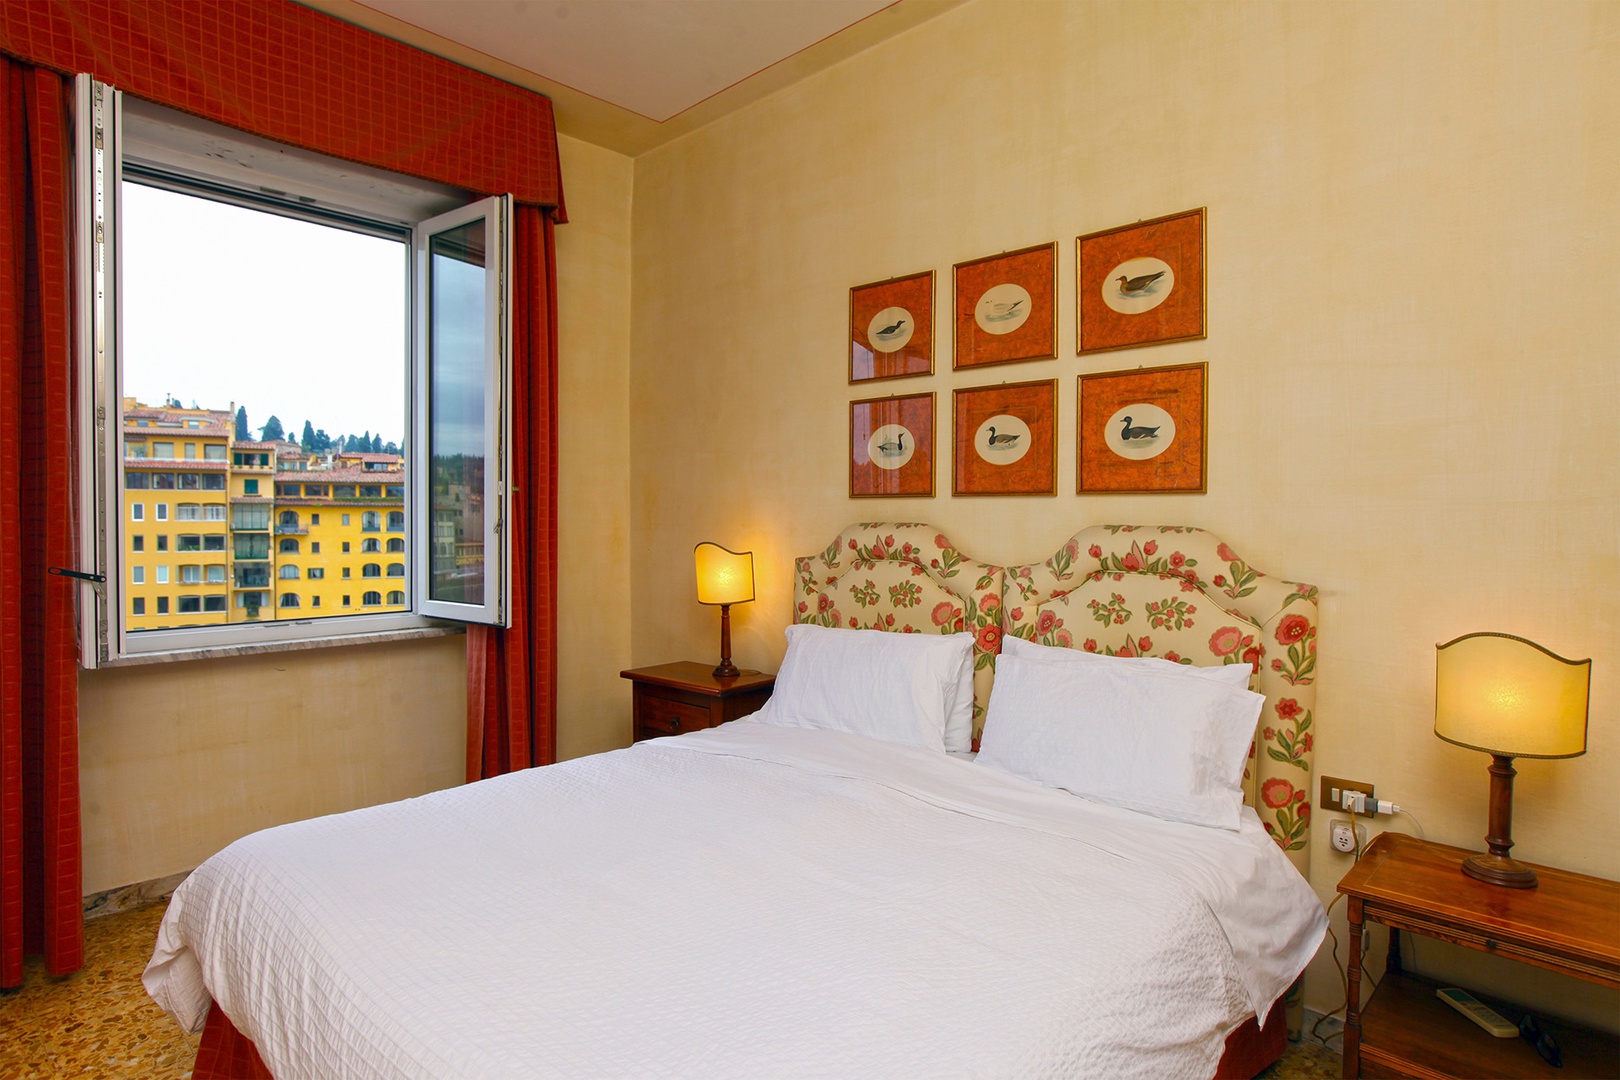 Bedroom 1 has Arno river views.